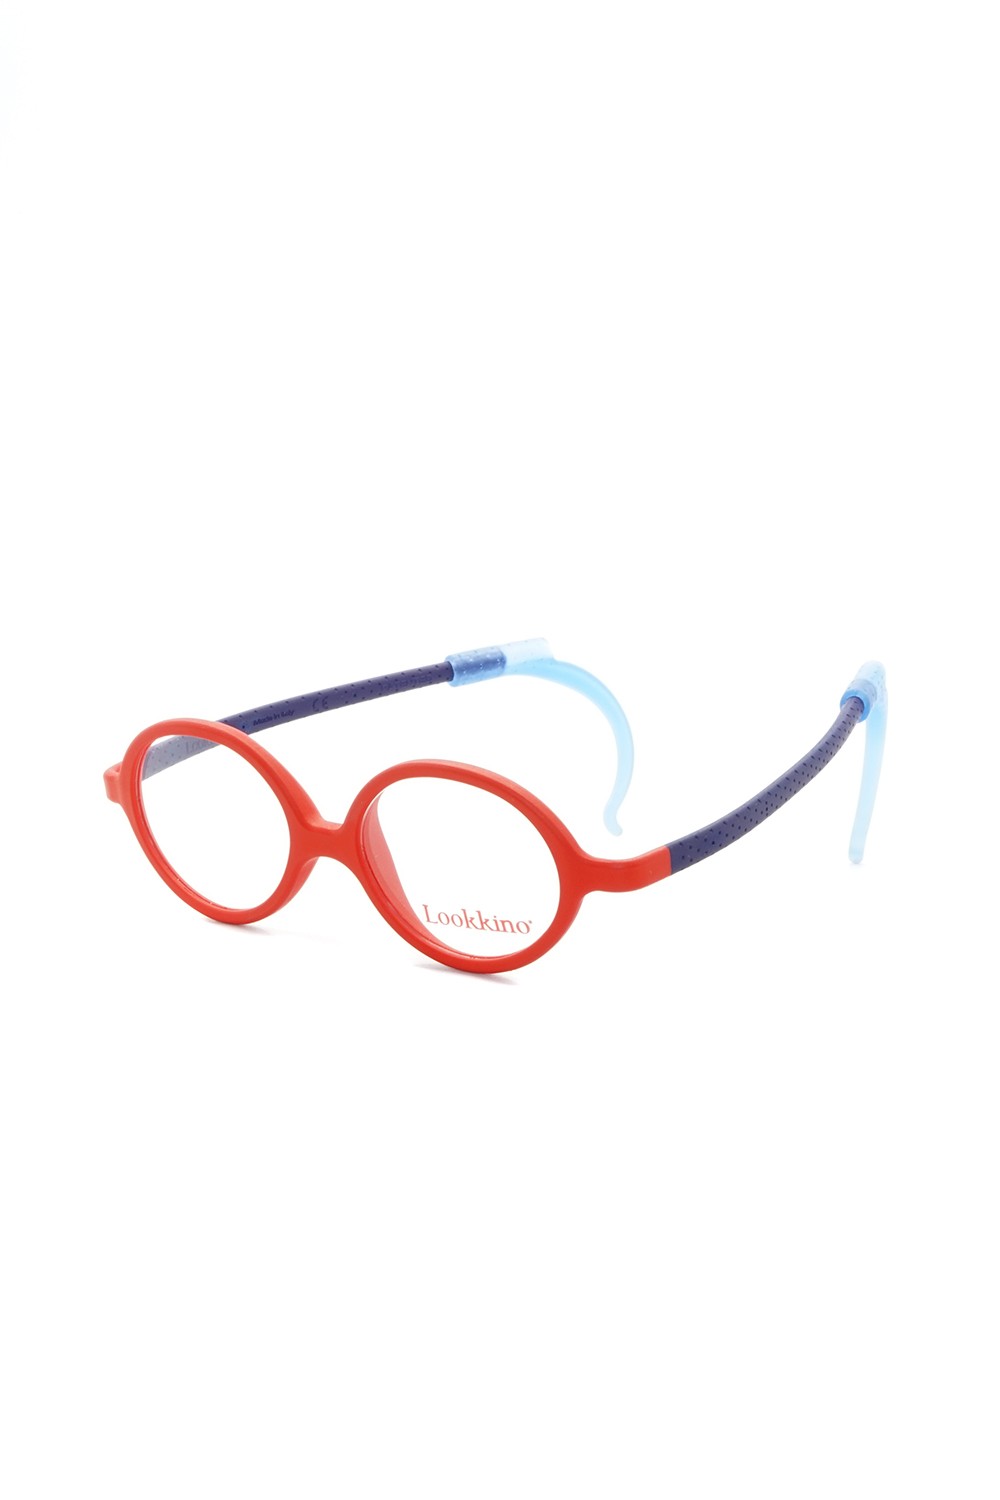 Lookkino - Occhiali da vista in plastica tondi per bambini rosso - 3704 W216